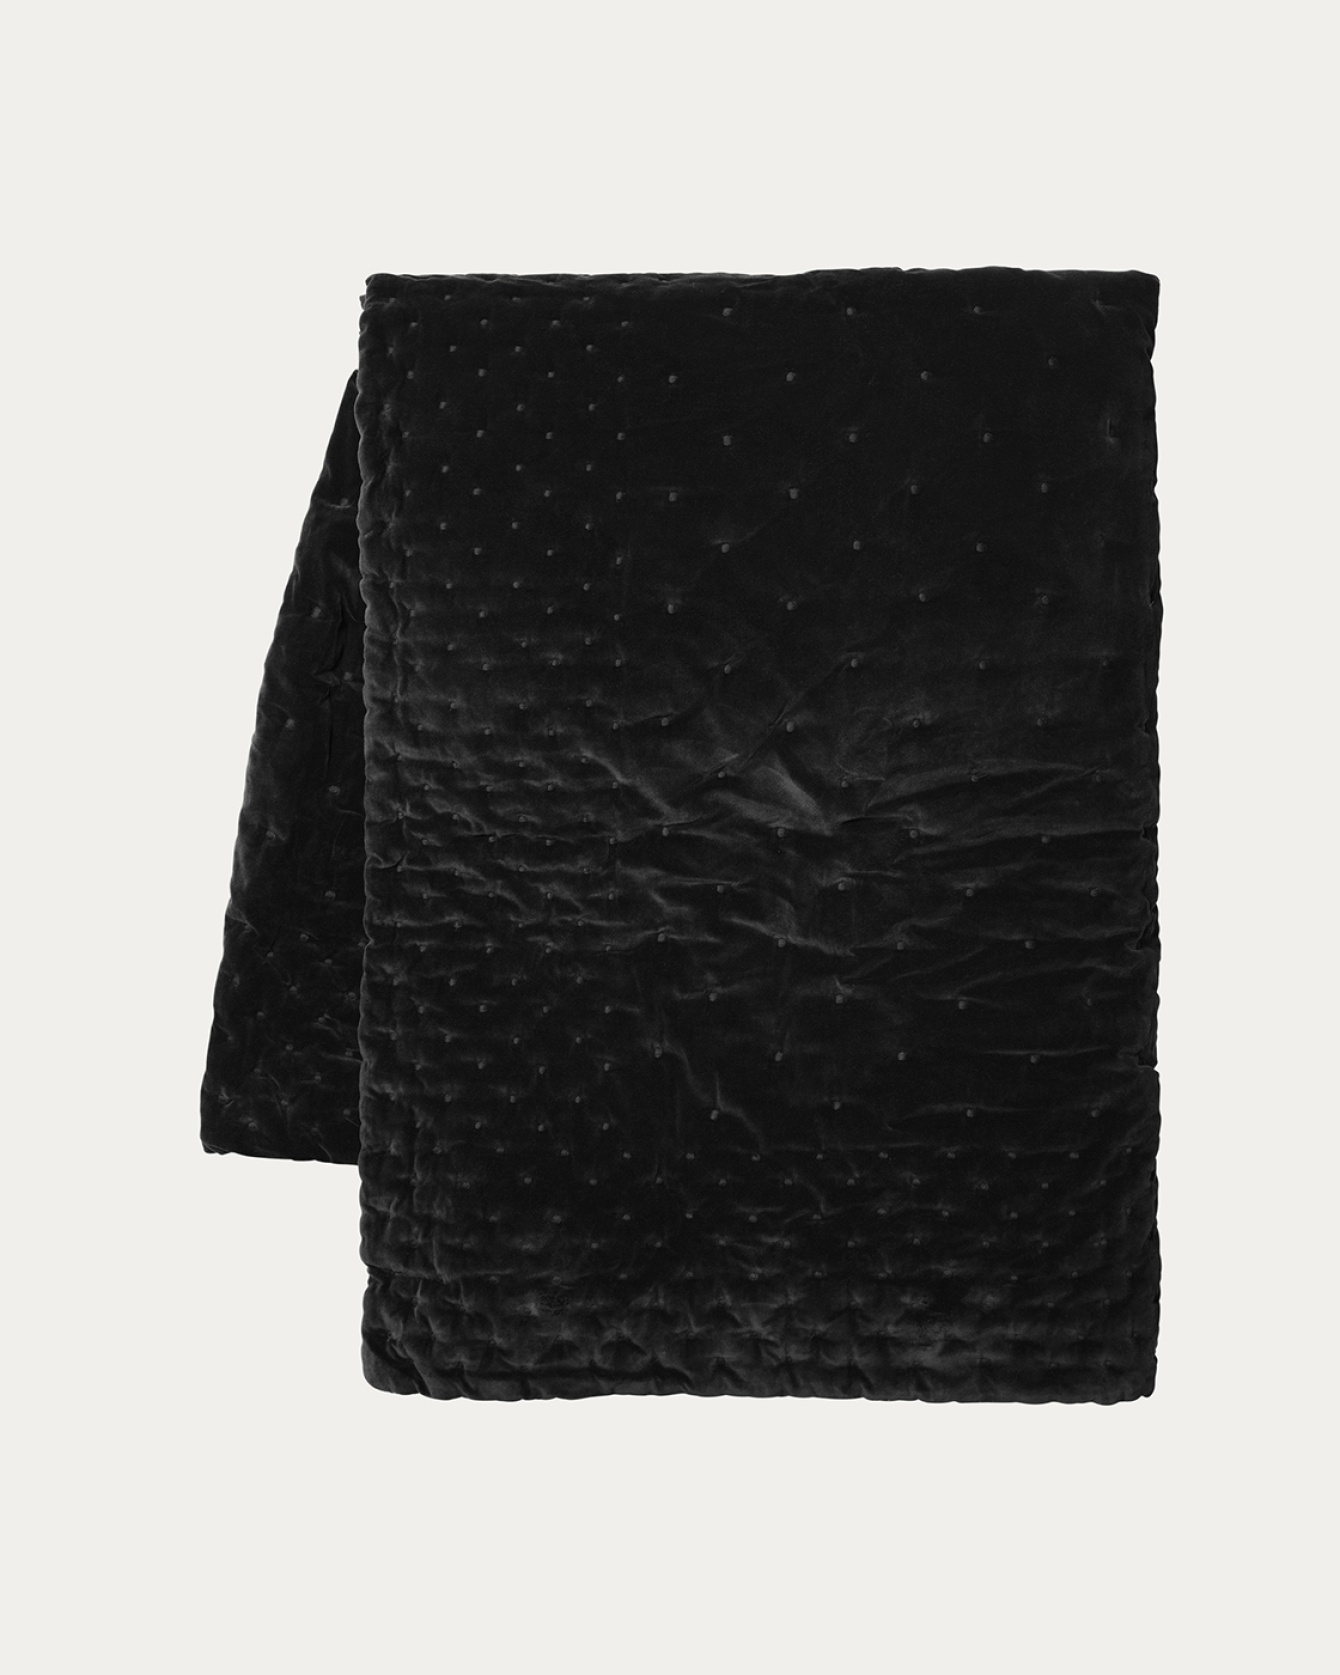 Produktbild svart PAOLO överkast av mjuk ekologisk bomullssammet för dubbelsäng från LINUM DESIGN. Storlek 270x260 cm.